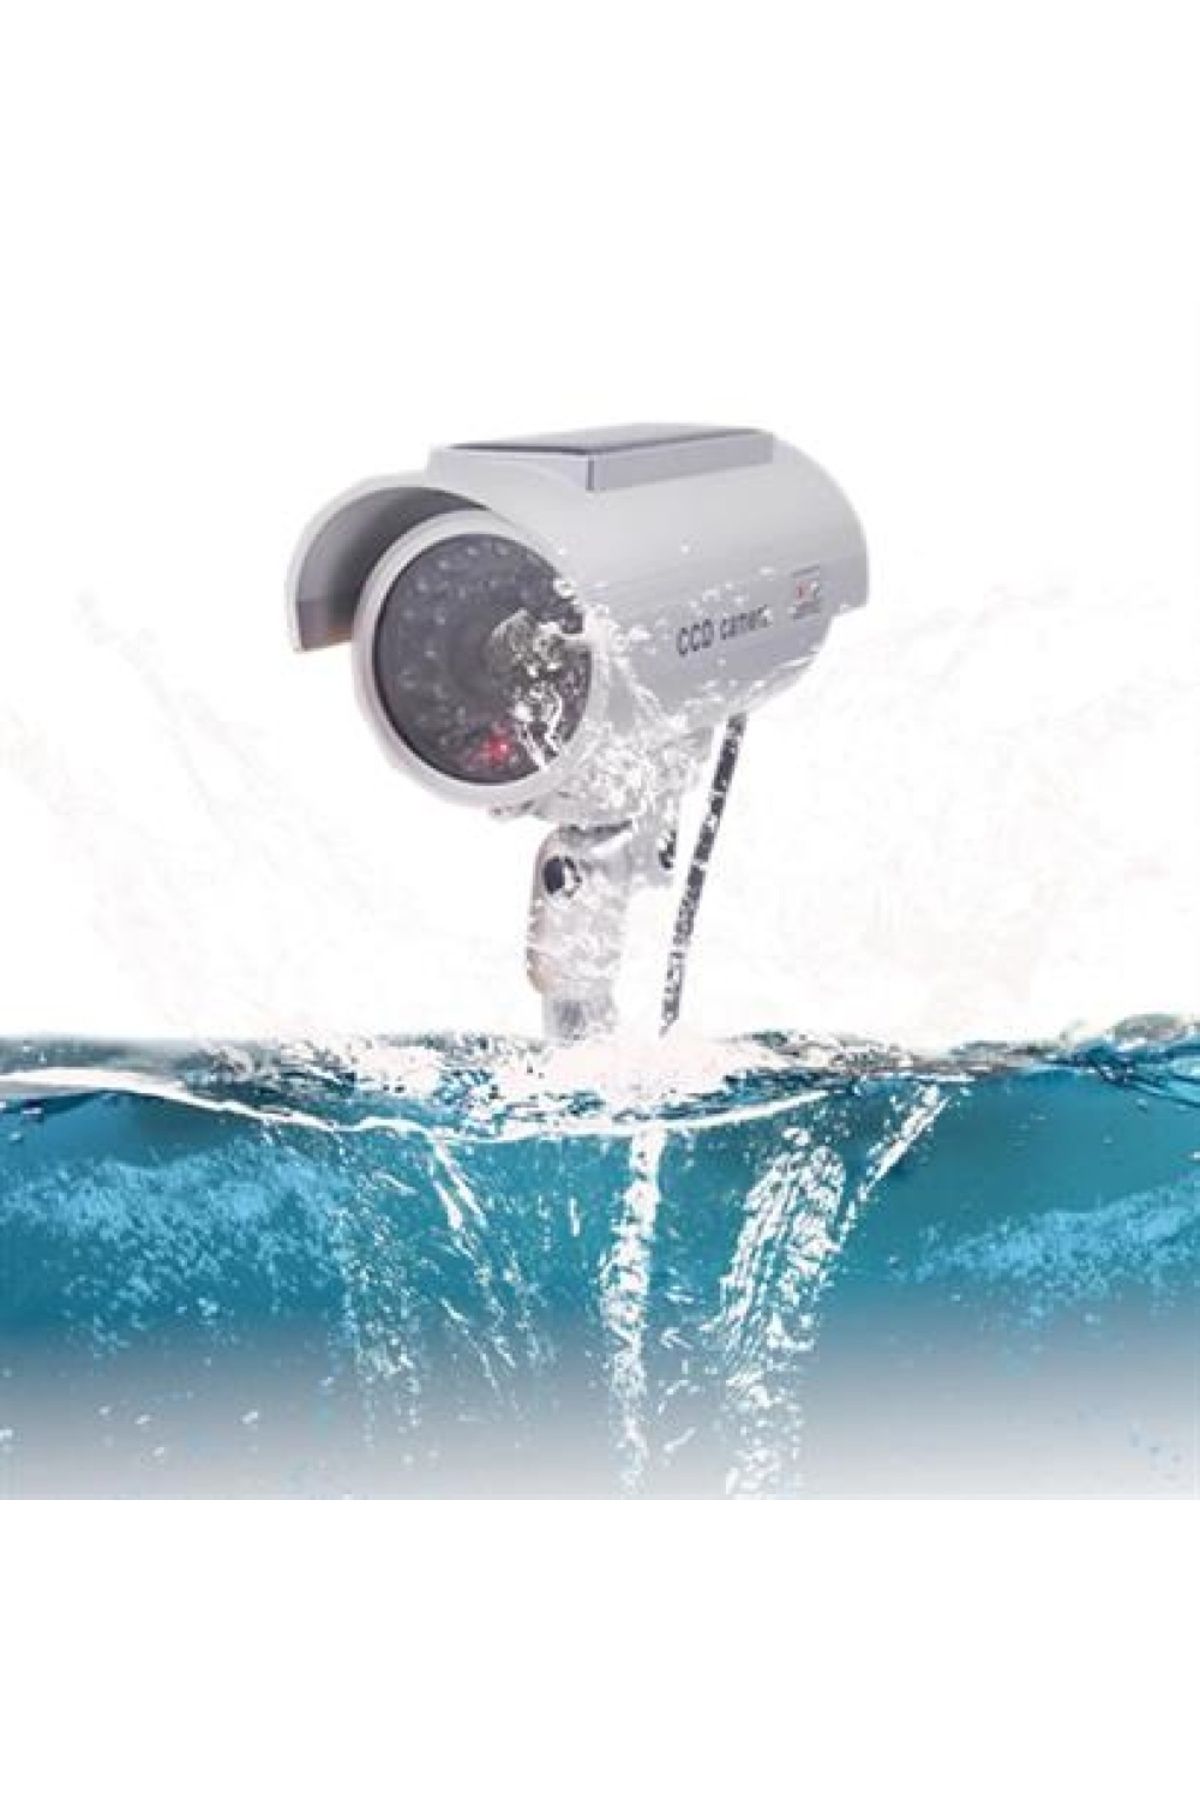 Genel Markalar Sahte Güvenlik Kamerası - İç Ve Dış Mekan Kullanımı İçin Gerçekçi Alternatif (Lisinya)